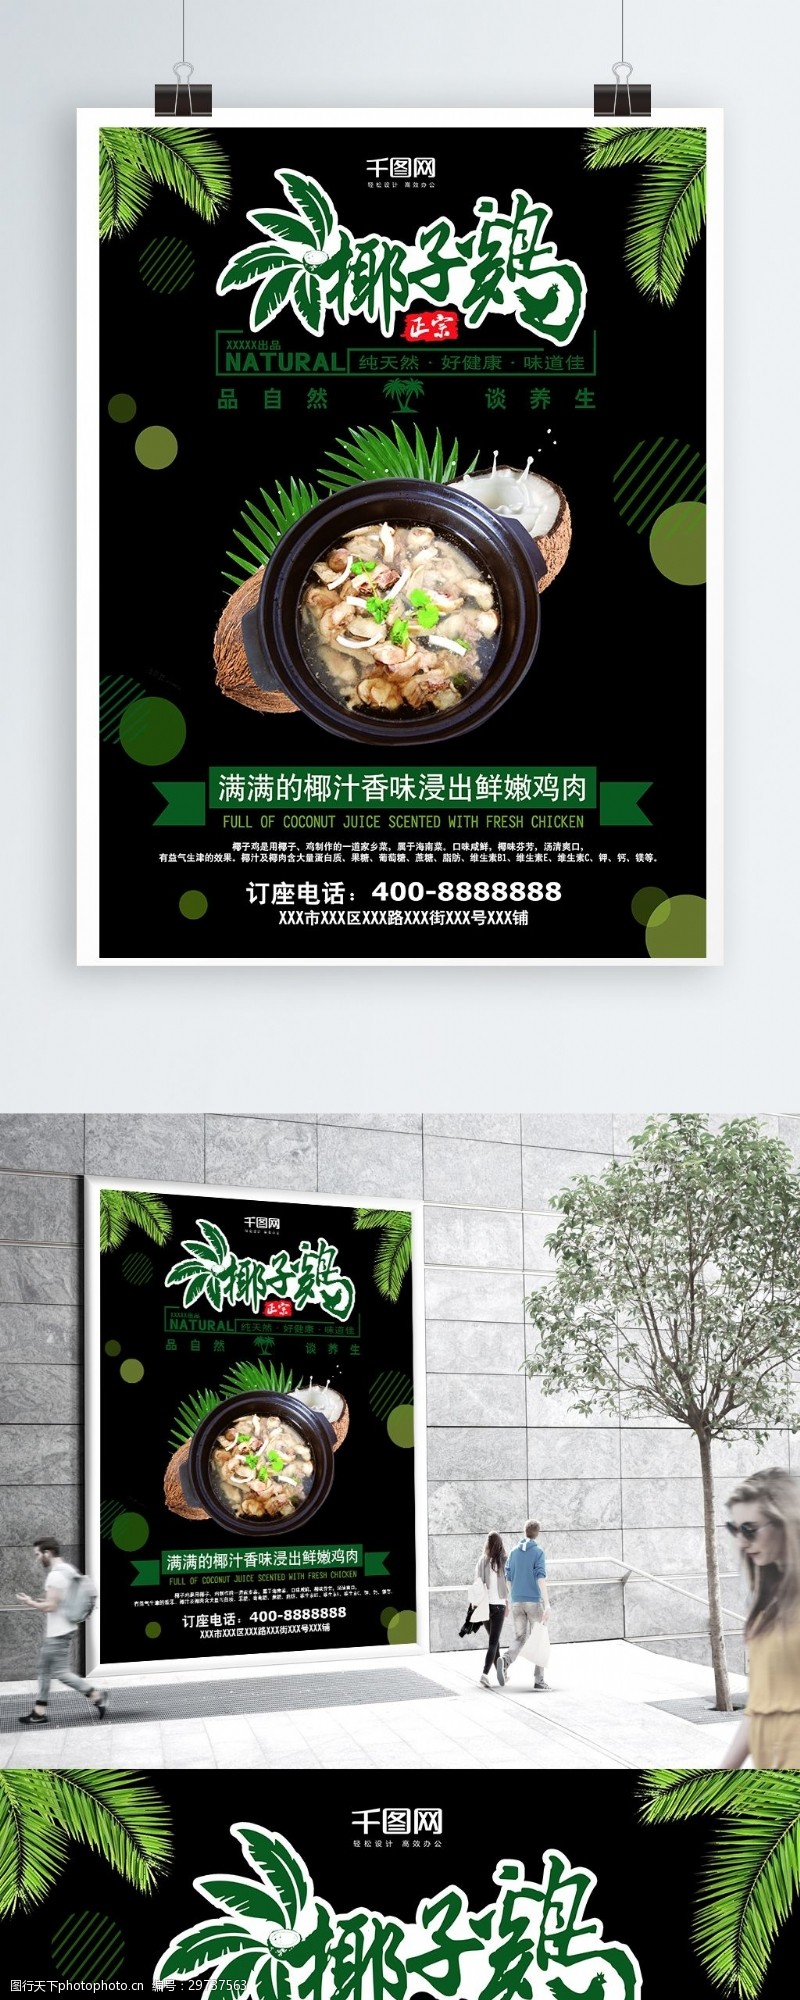 绿色椰子鸡宣传单海报模版